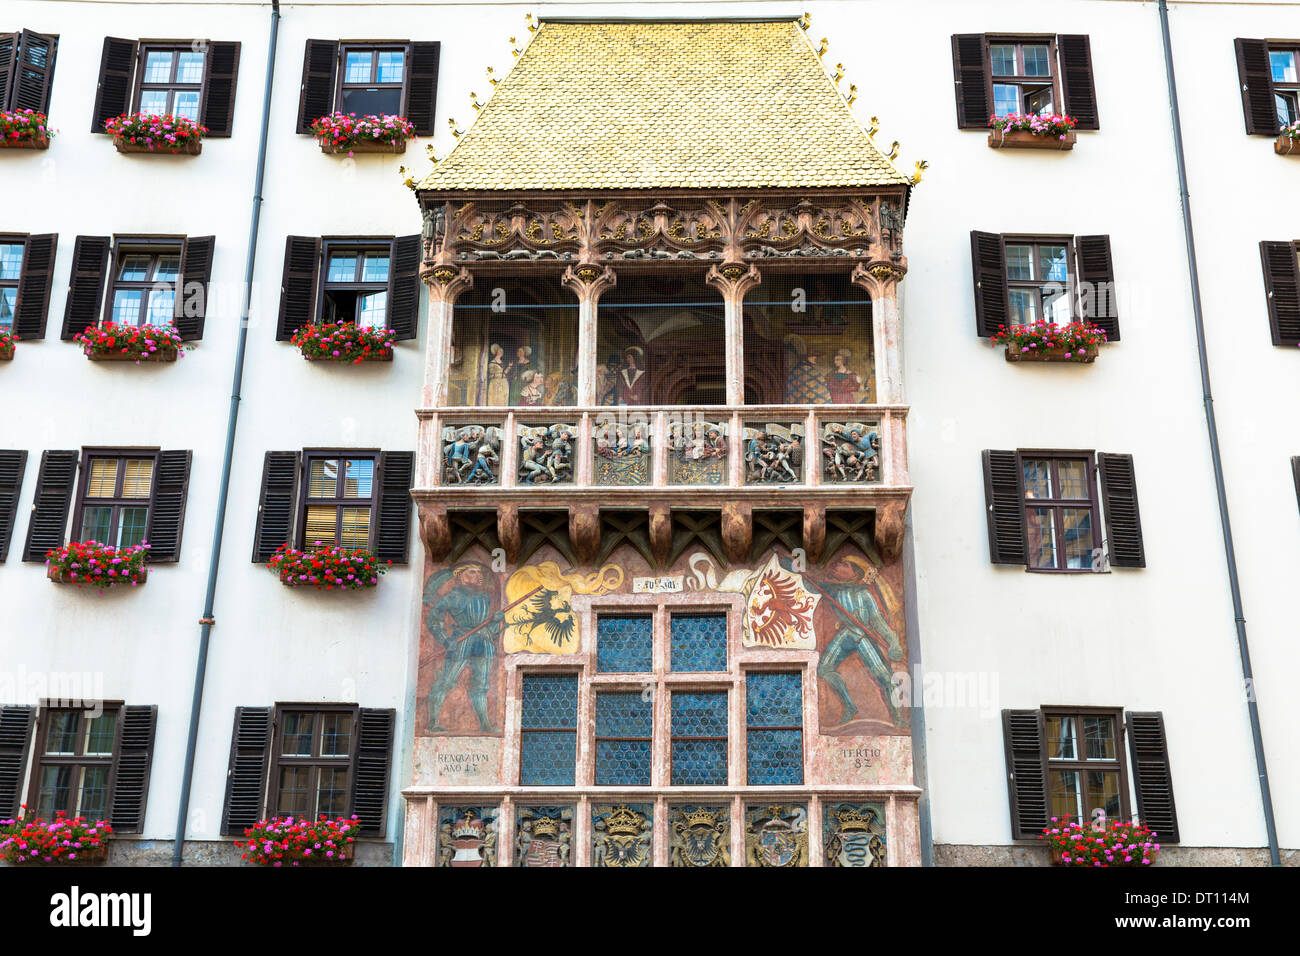 Goldenes Dachl, Goldenes Dachl gebaut 1500 mit feuervergoldeten Kupfer Fliesen in der Herzog-Friedrich-Straße in Innsbruck Tirol Österreich Stockfoto